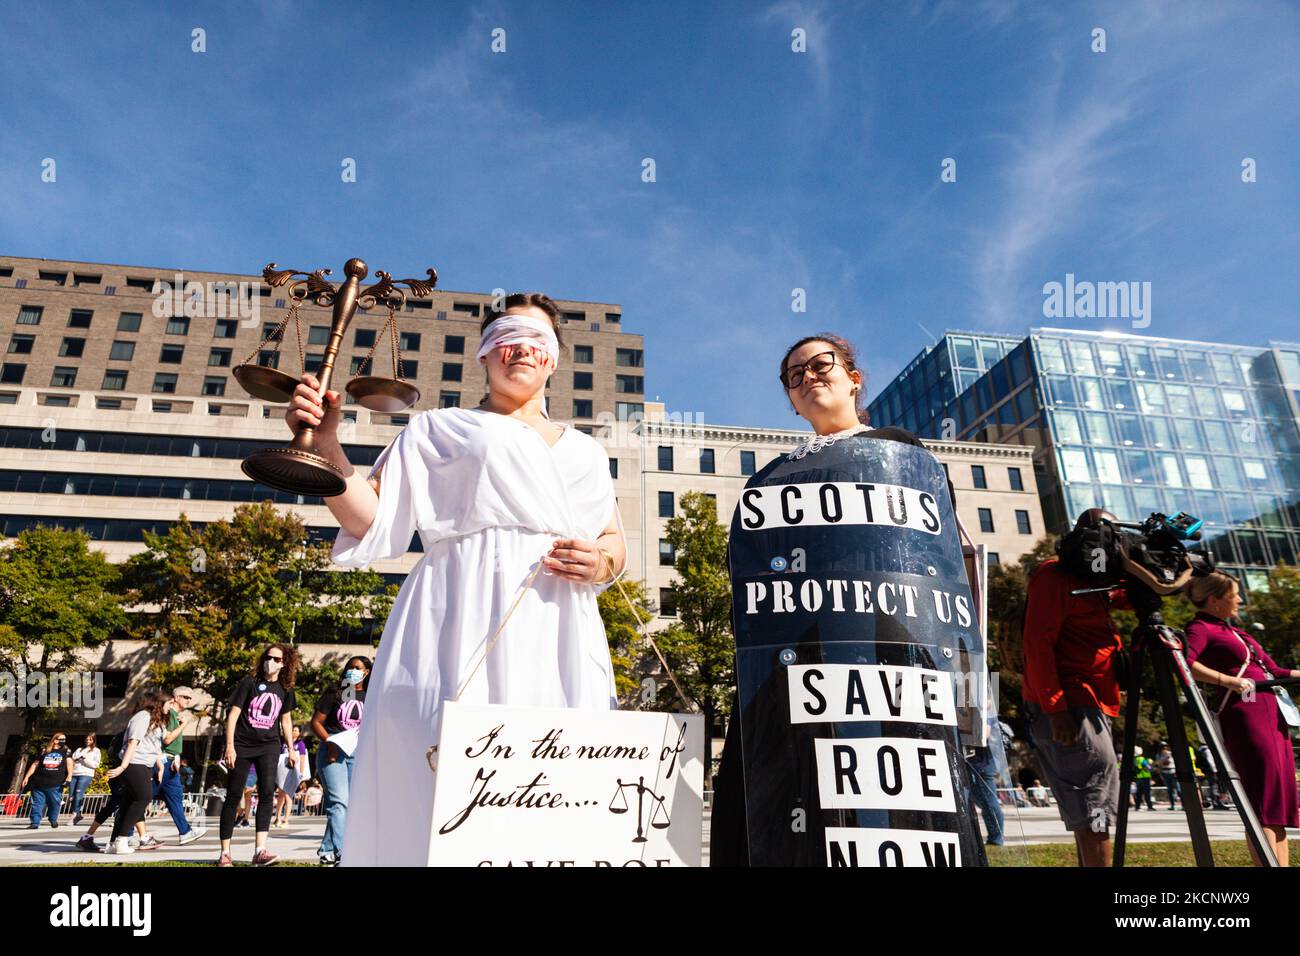 Le suore Lauren Biggs (a sinistra) e Katherine Johnson partecipano al Women's March Rally for Abortion Justice di Washington, DC vestito da Lady Justice ferita e sanguinante e Ruth Bader Ginsburg. I manifestanti chiedono al governo degli Stati Uniti di proteggere i diritti riproduttivi delle donne e l'accesso all'aborto in tutto il paese. In particolare, chiedono al Congresso di approvare la Legge sulla protezione della salute delle donne (WHPA) e CIASCUNA Legge, che garantiscono l'accesso all'aborto e richiedono che sia coperta da un'assicurazione. Più di 600 proteste satellitari si stanno verificando a livello nazionale il 2 ottobre. Gli eventi sono in parte in risposta a un restrittivo A. Foto Stock